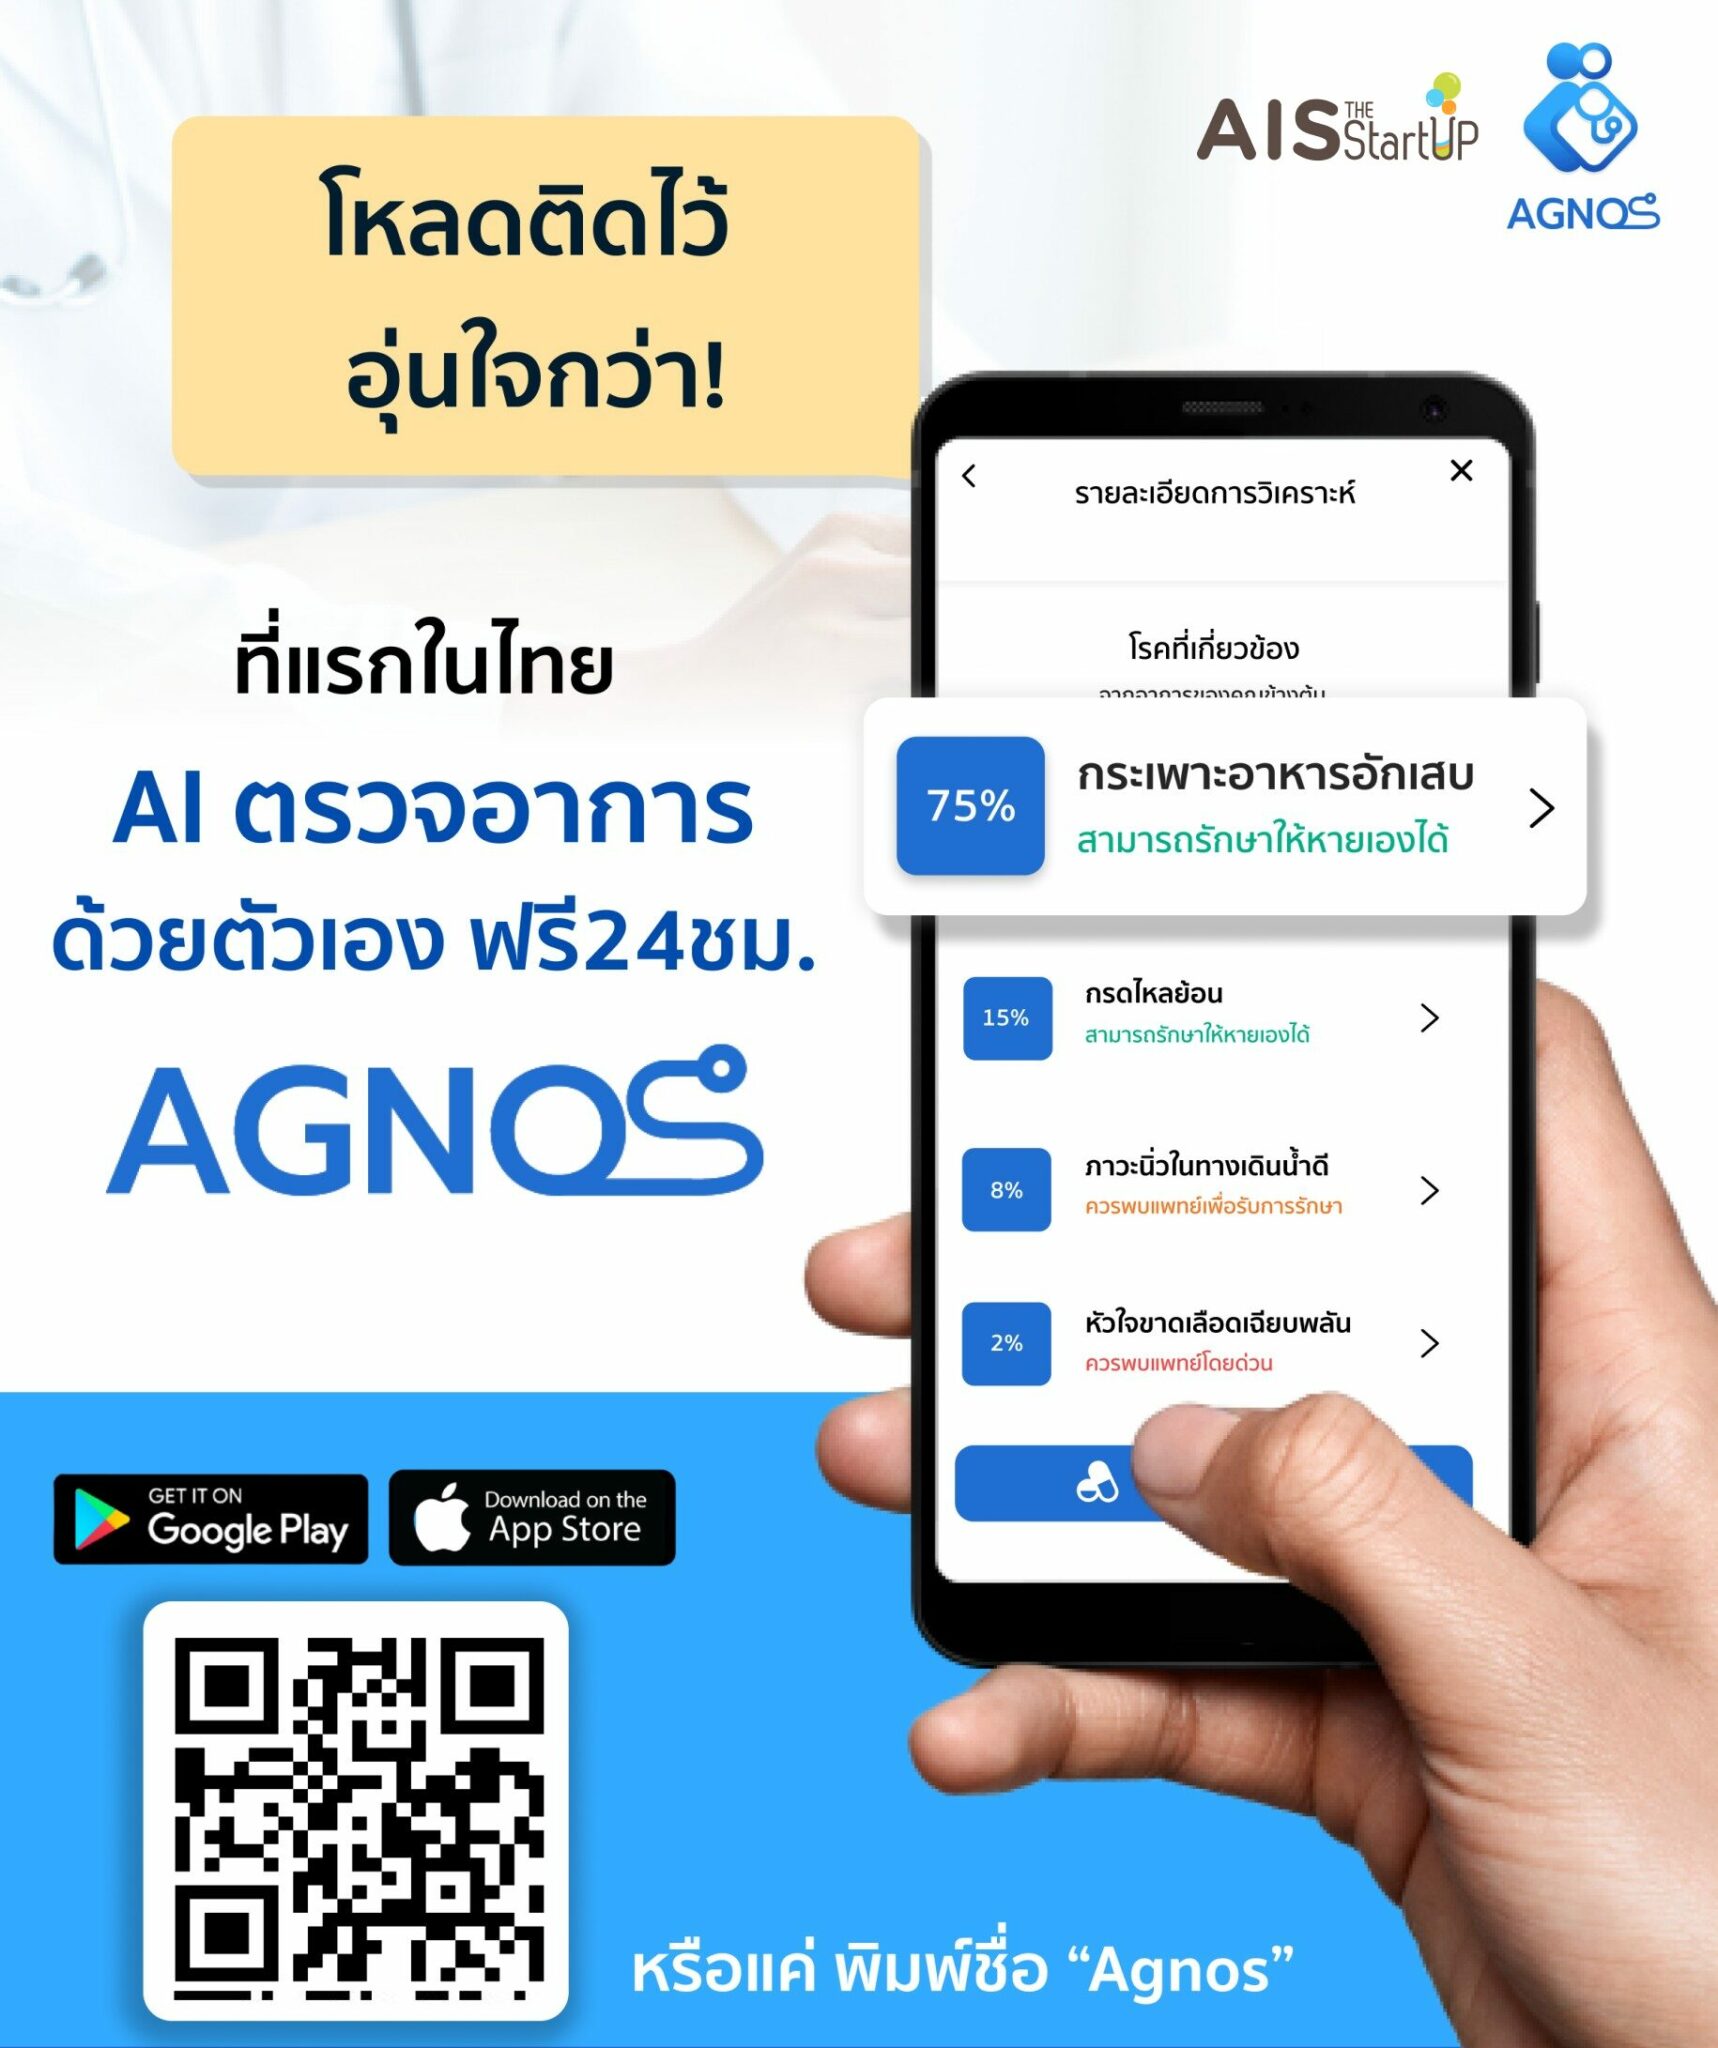 Agnos AIS - Startup Thailand